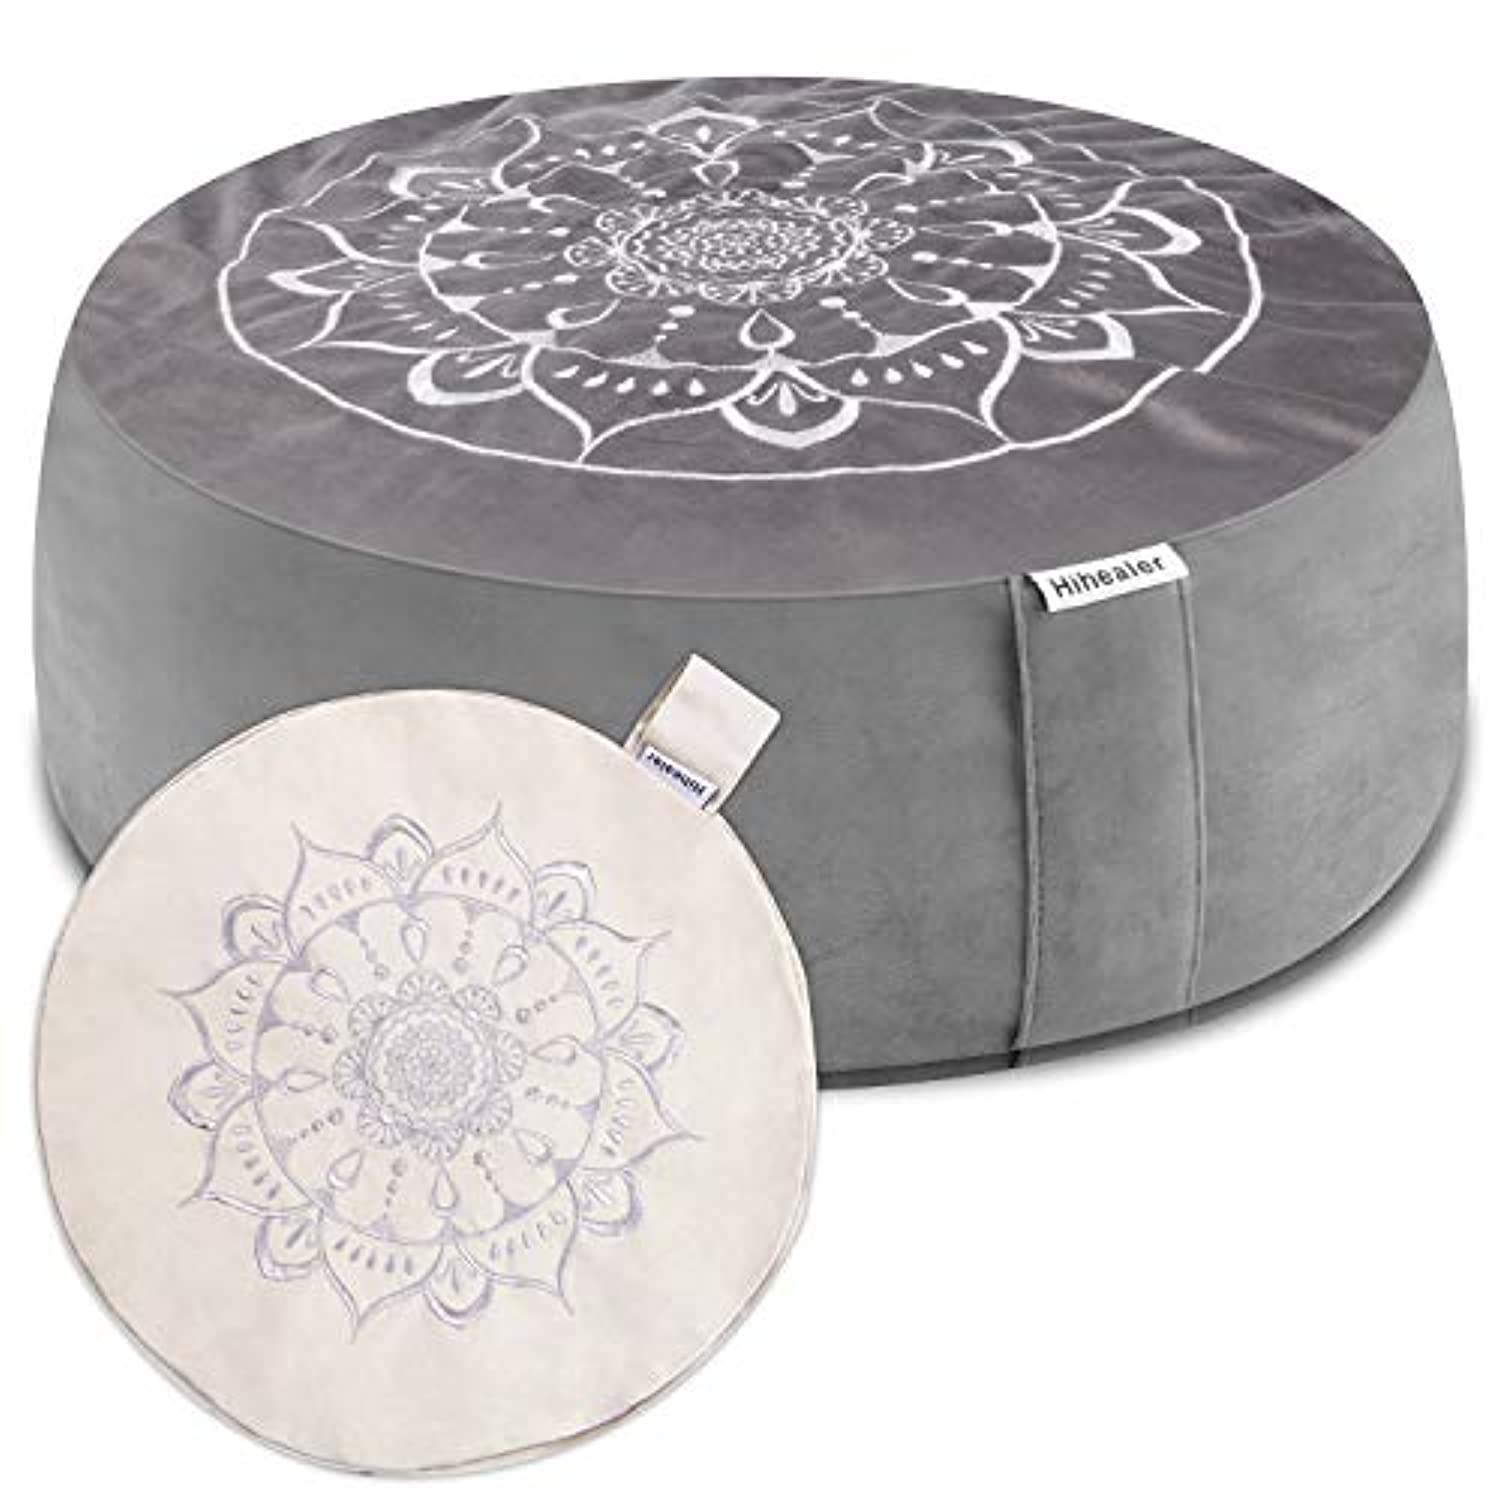 Yogavni Kit de cojines de meditación – Almohada redonda de meditación Zafu  rellena de trigo sarraceno/cojín de yoga con una almohada grande de suelo